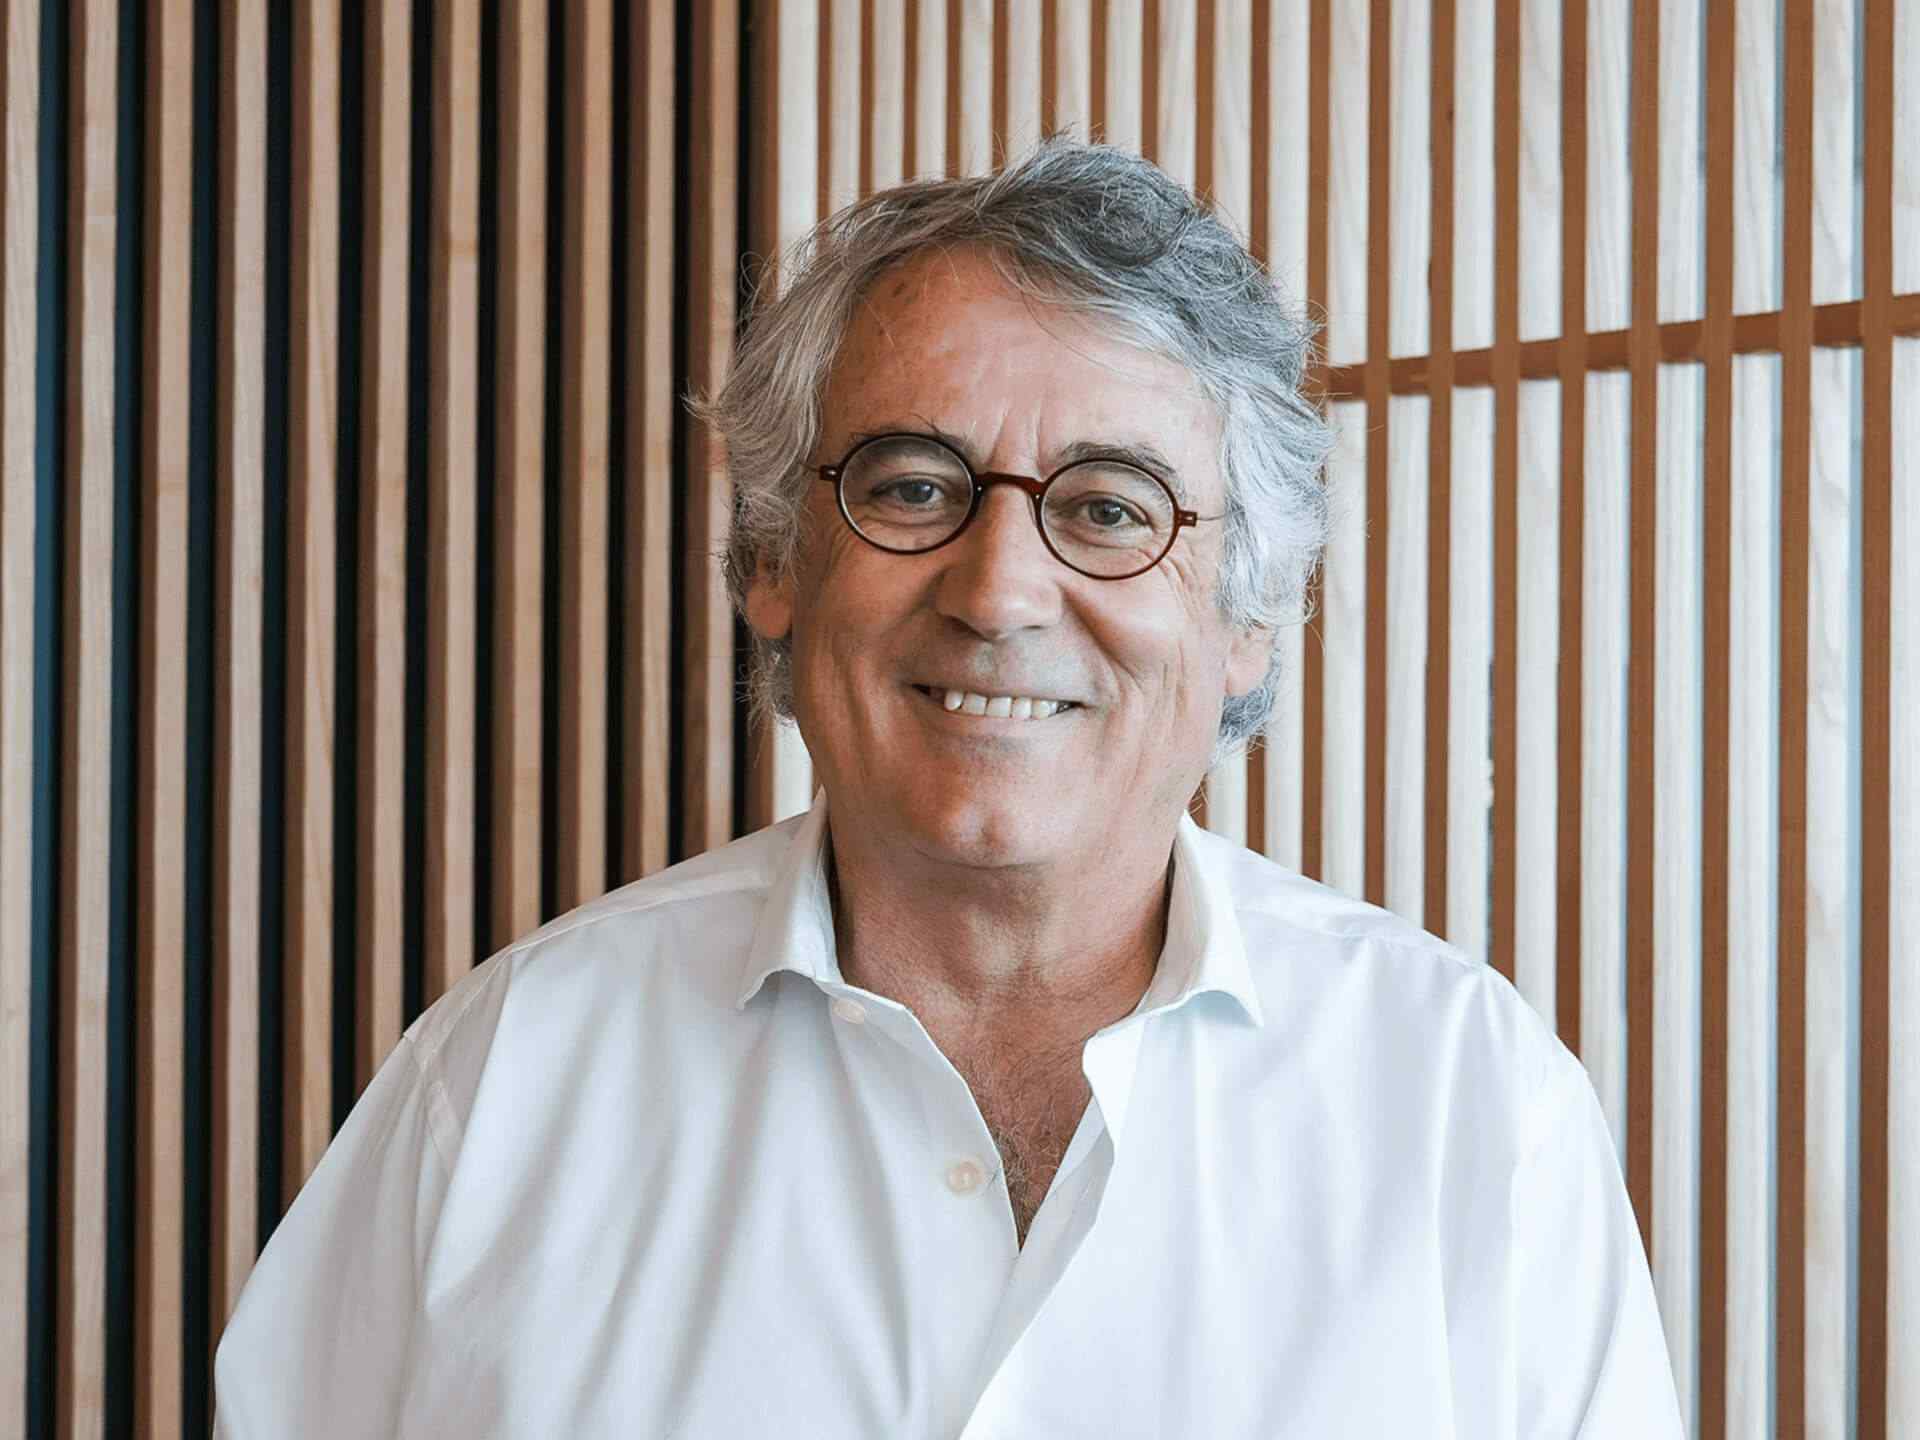 Clinical Director Dr. Fernando Cássio